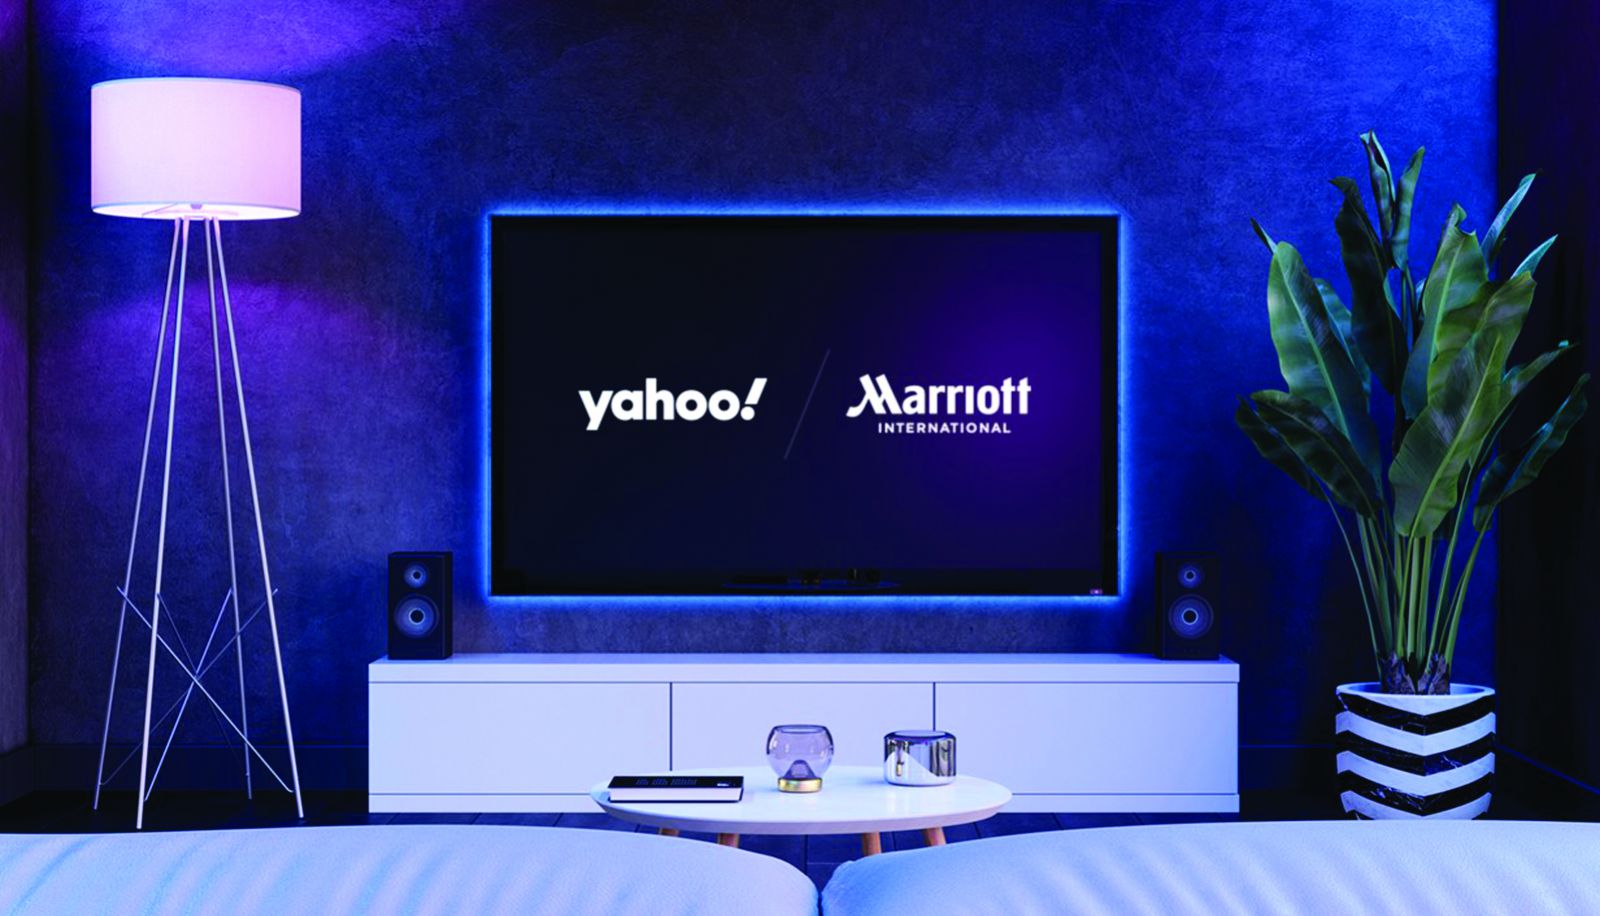  Marriott hợp tác với Yahoo Inc cung cấp dịch vụ quảng cáo, đối tượng khách hàng có thể dựa trên dữ liệu khách hàng ẩn danh từ những lượt tìm kiếm và đặt phòng trên các kênh kỹ thuật số của mình.